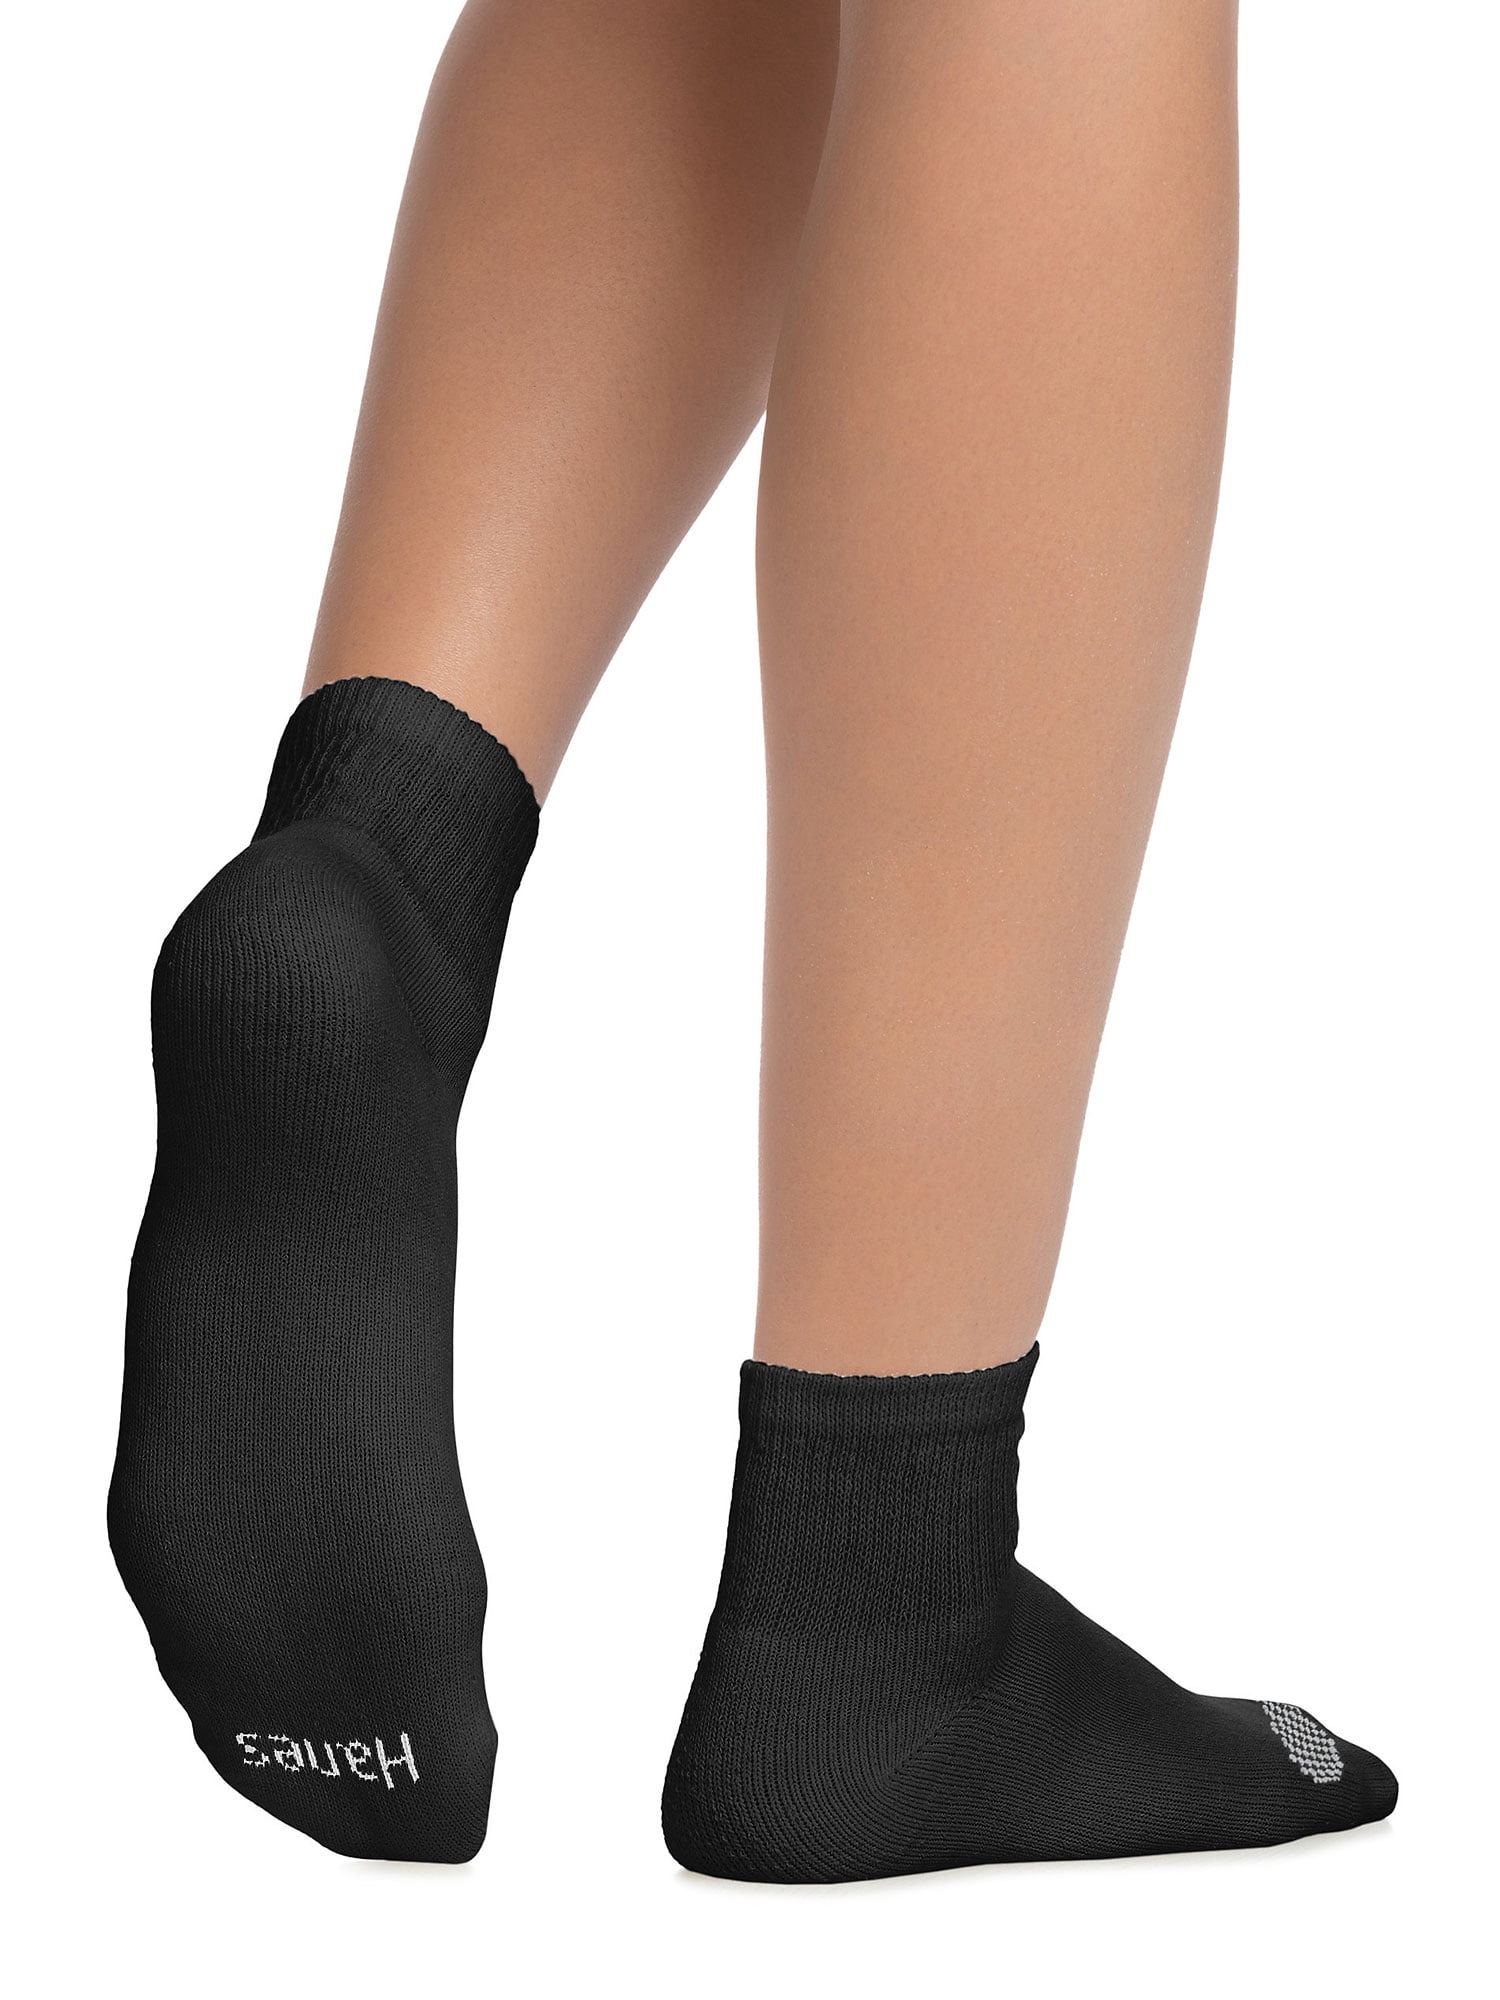 Hanes girls 12 Pack Ankle Socks Socks